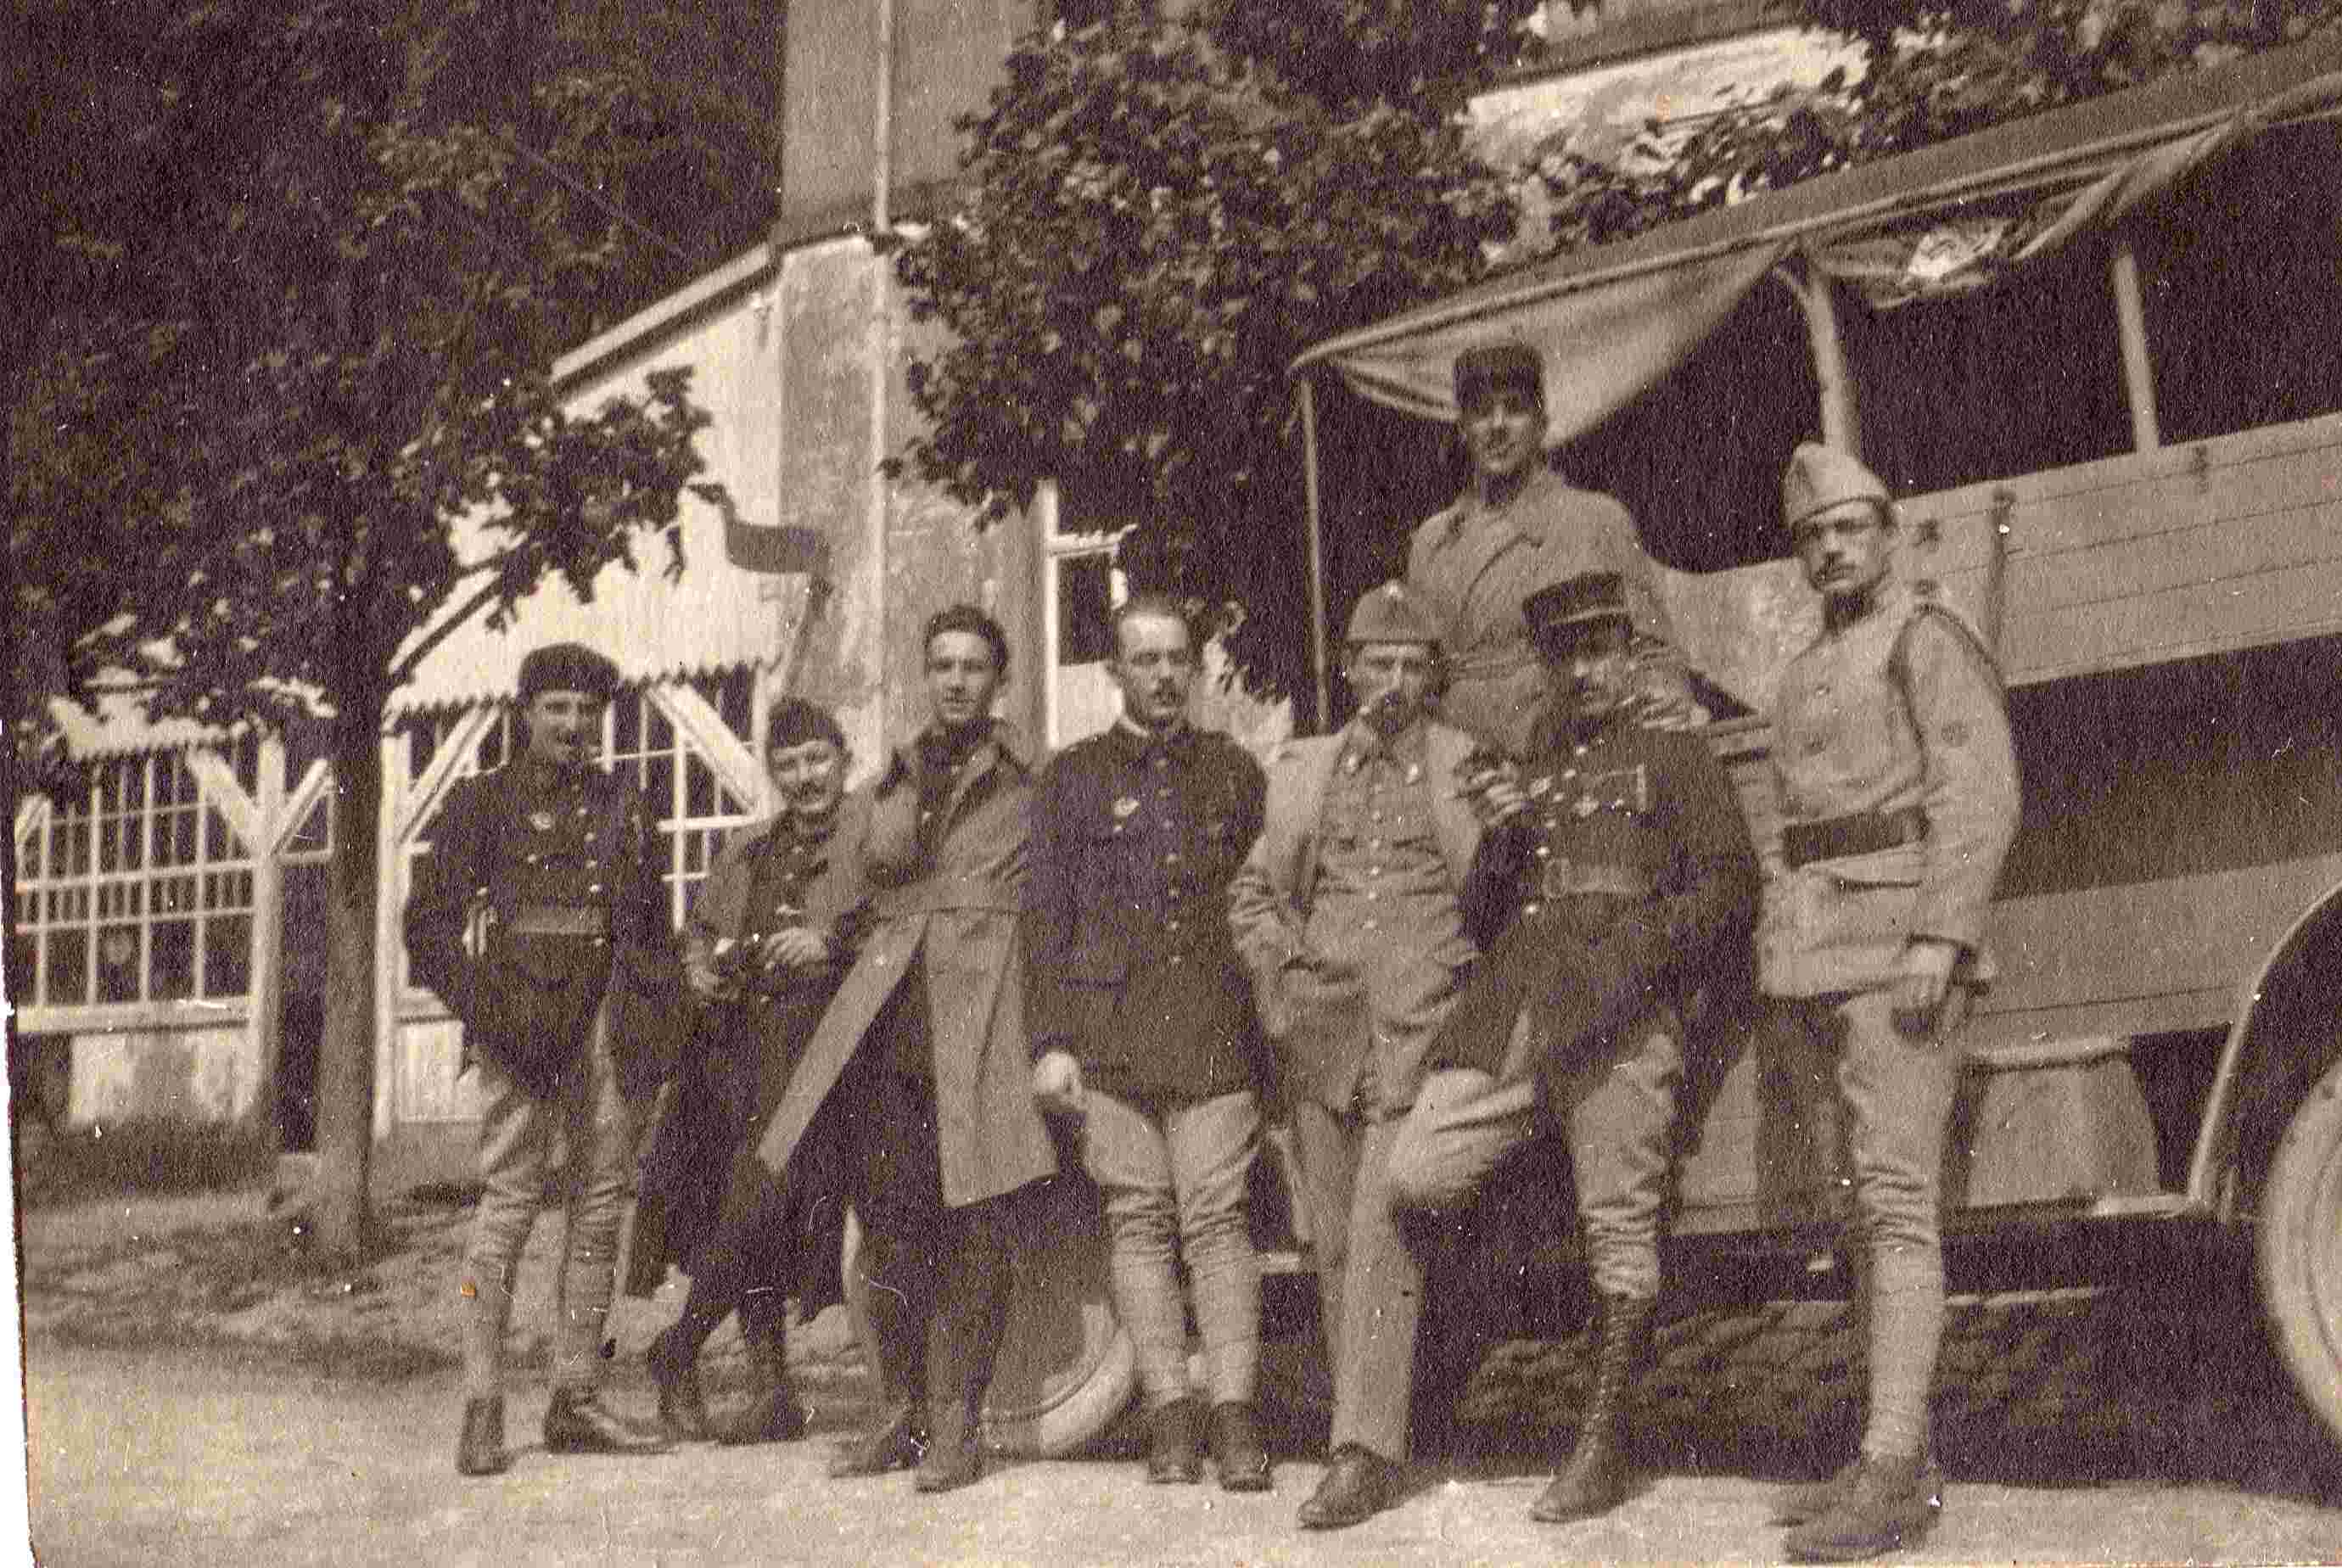 Blaise Chambonnière <br />2 eme à gauche<br />le 13 juillet 1919<br />date marqué sur photo !<br />camarade à identifier...